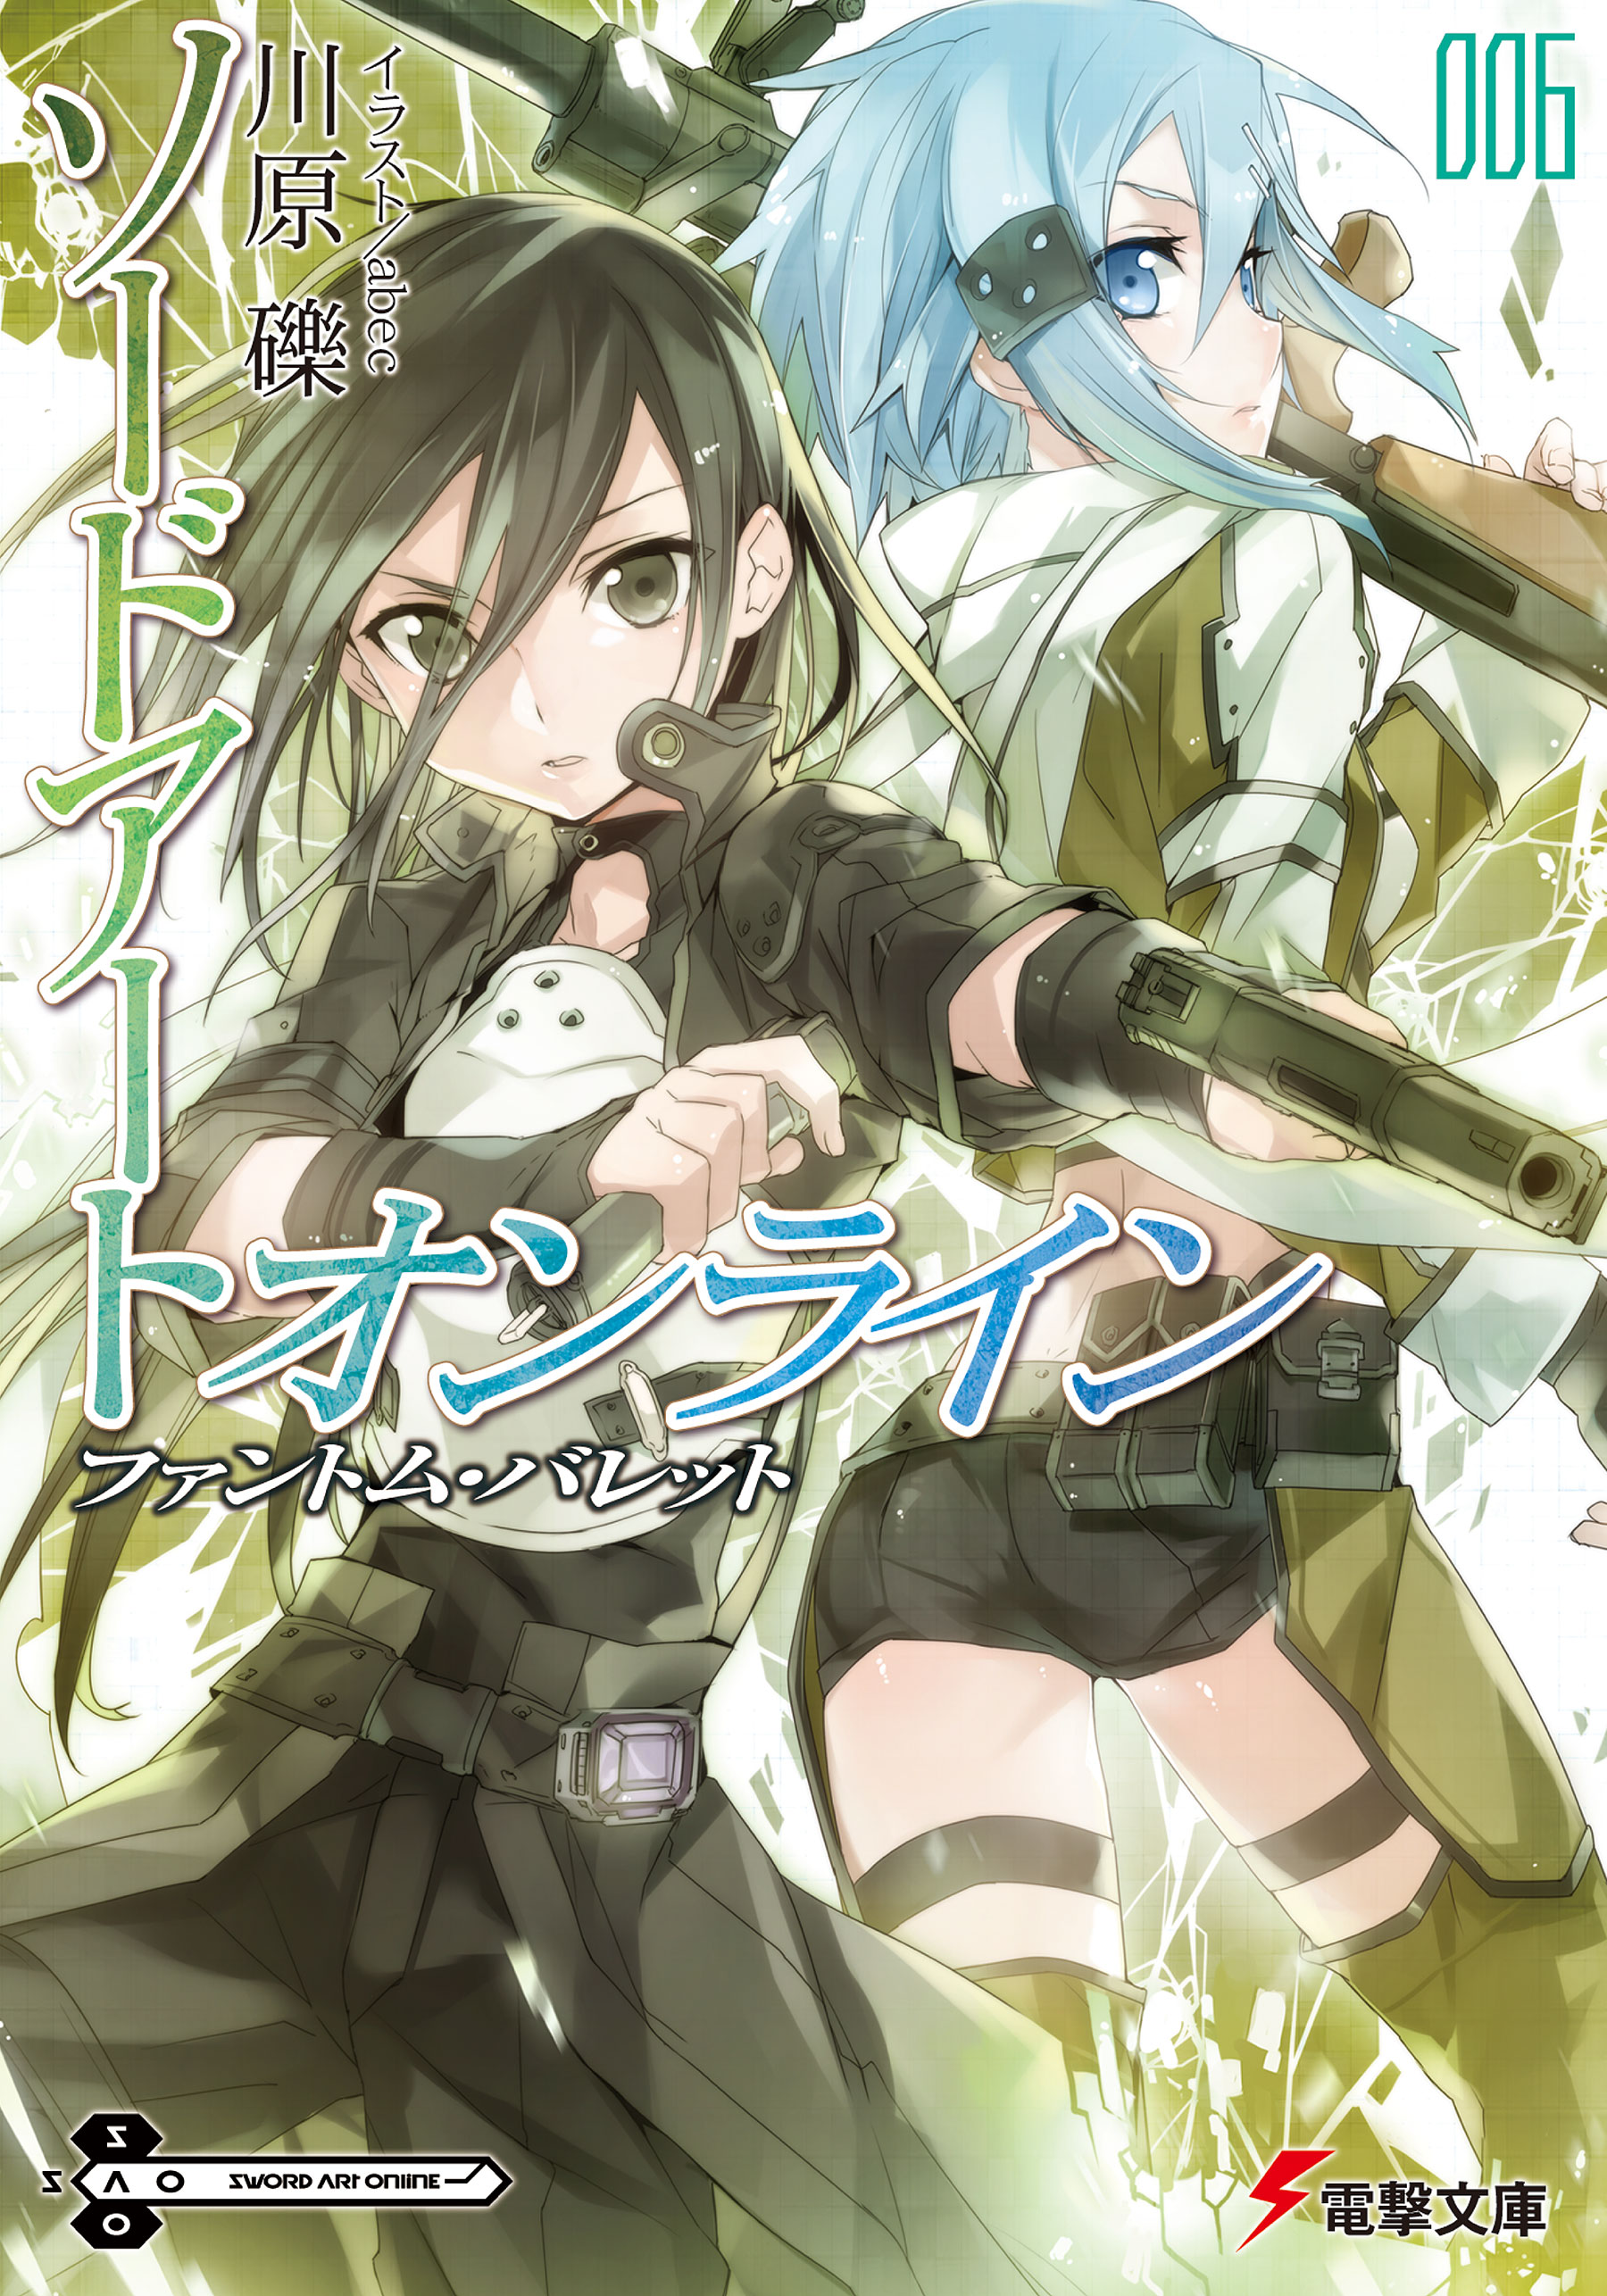 Sword Art Online Light Novel Volume 06 Sword Art Online Wiki Fandom